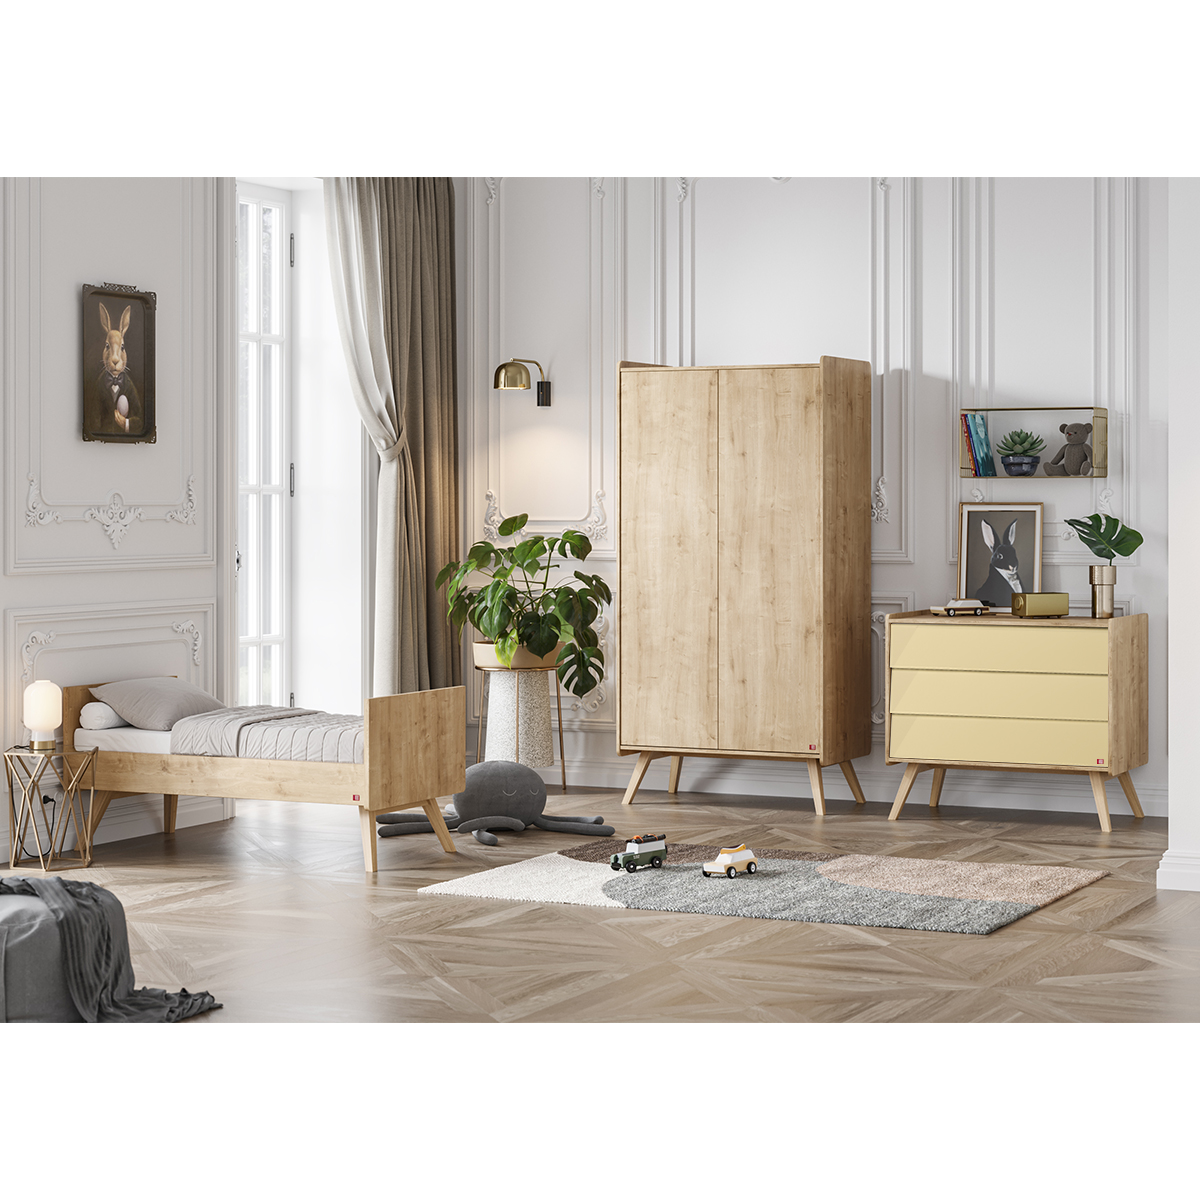 Chambre complète lit évolutif 70x140 - commode à langer - armoire 2 portes Vox Vintage - Bois Beige